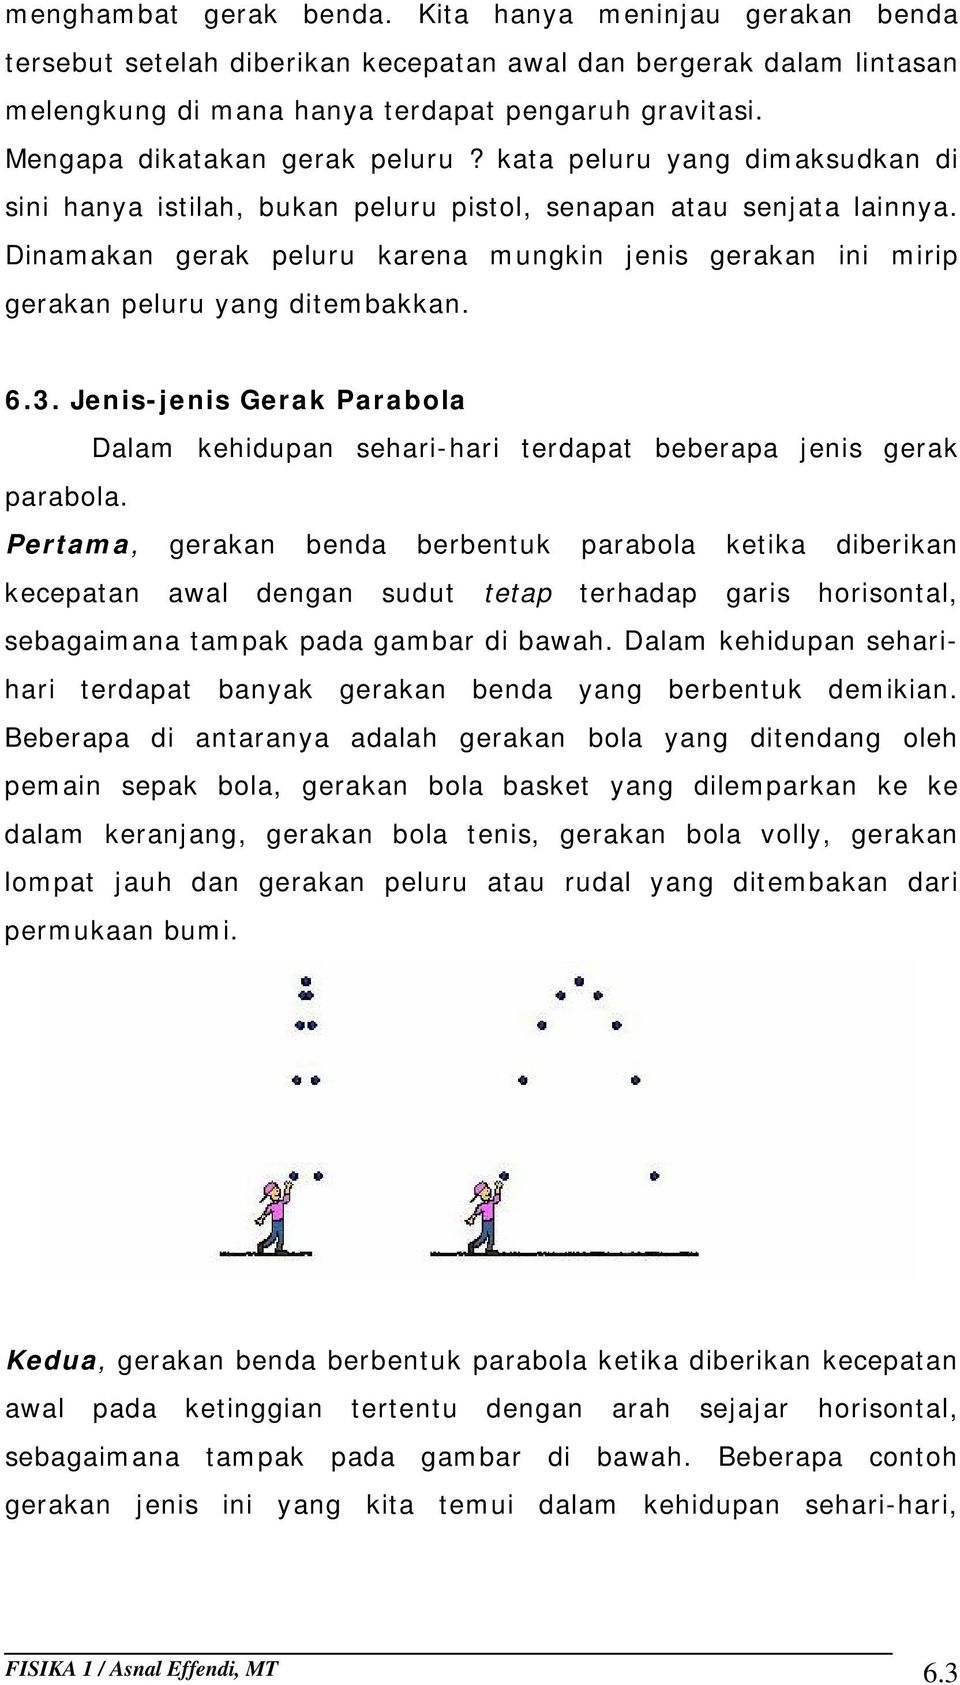 Mahasiswa Memahami Konsep Gerak Parabola Jenis Gerak Parabola Emnganalisa Dan Membuktikan Secara Matematis Gerak Parabola Pdf Download Gratis